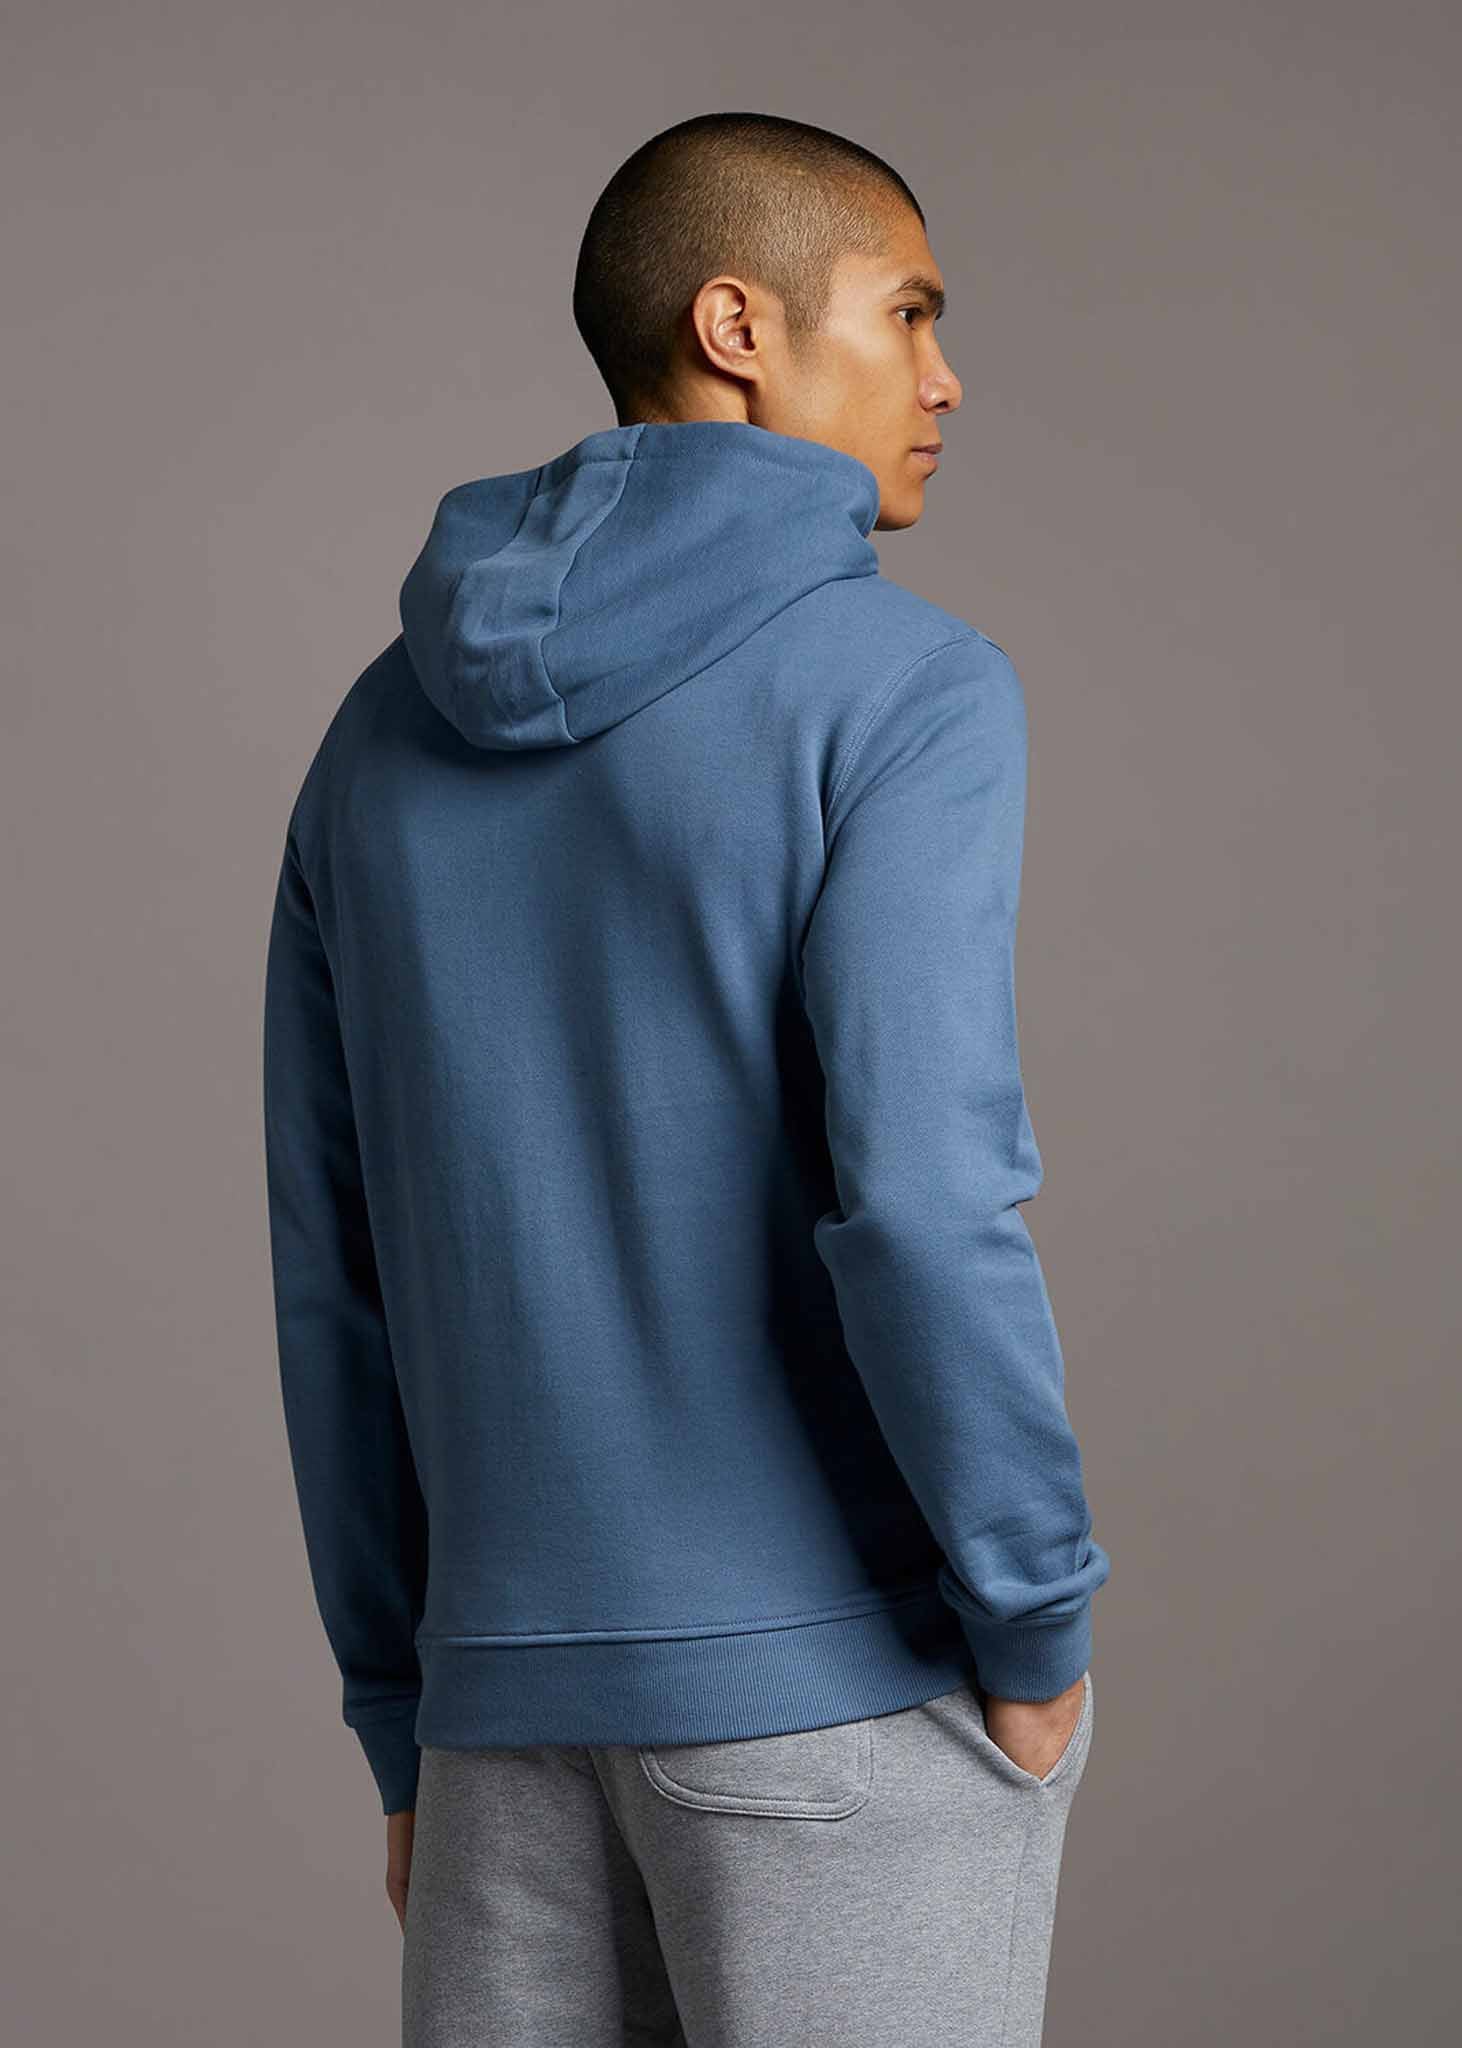 Lyle & Scott Hoodies  Pullover hoodie - slate blue 